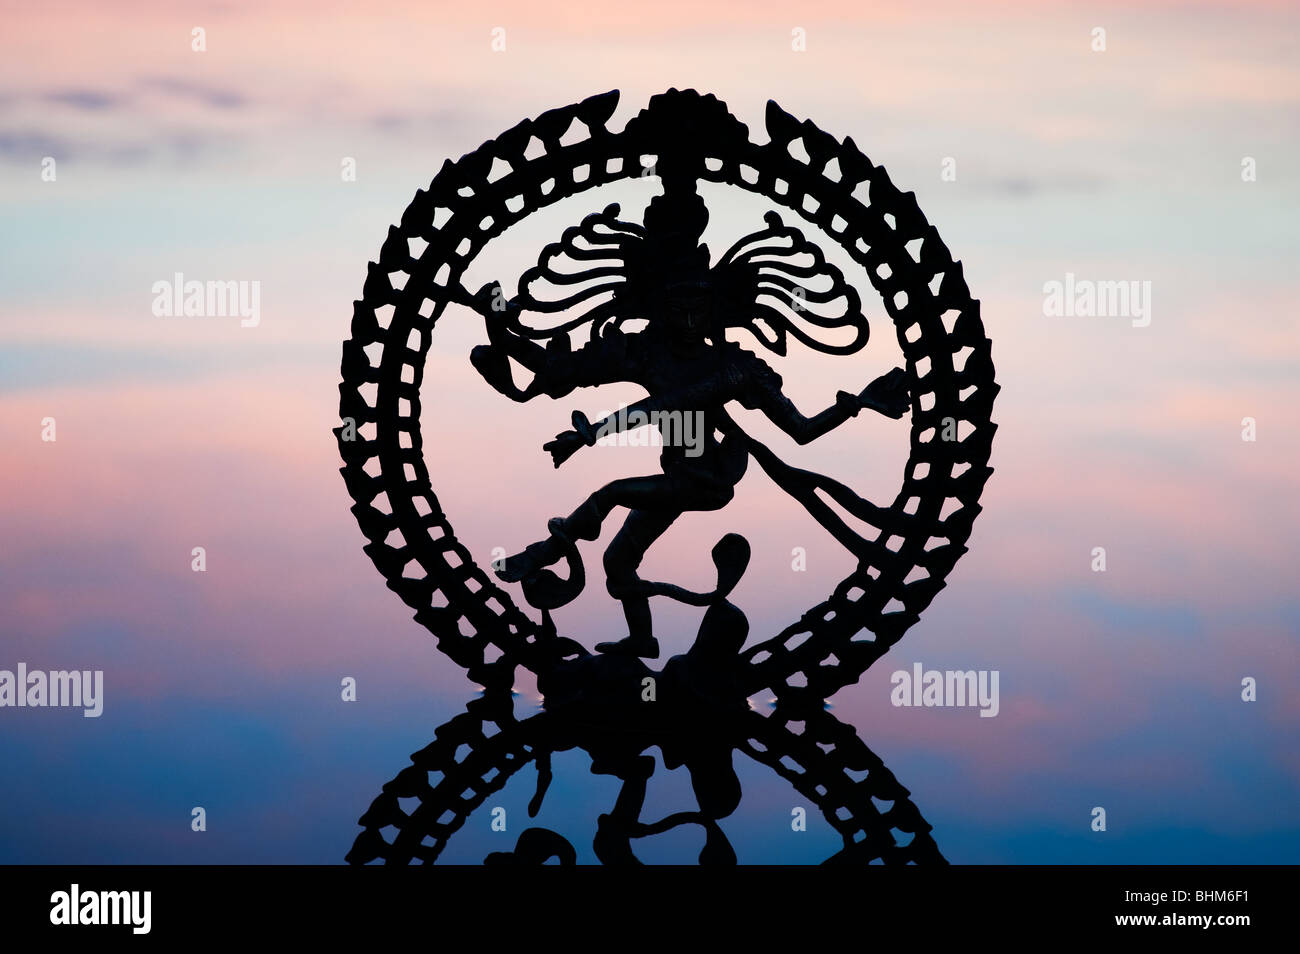 Tanzende Lord Shiva Statue, Nataraja Silhouette, bei Morgendämmerung Reflexion im Wasser in Indien Stockfoto